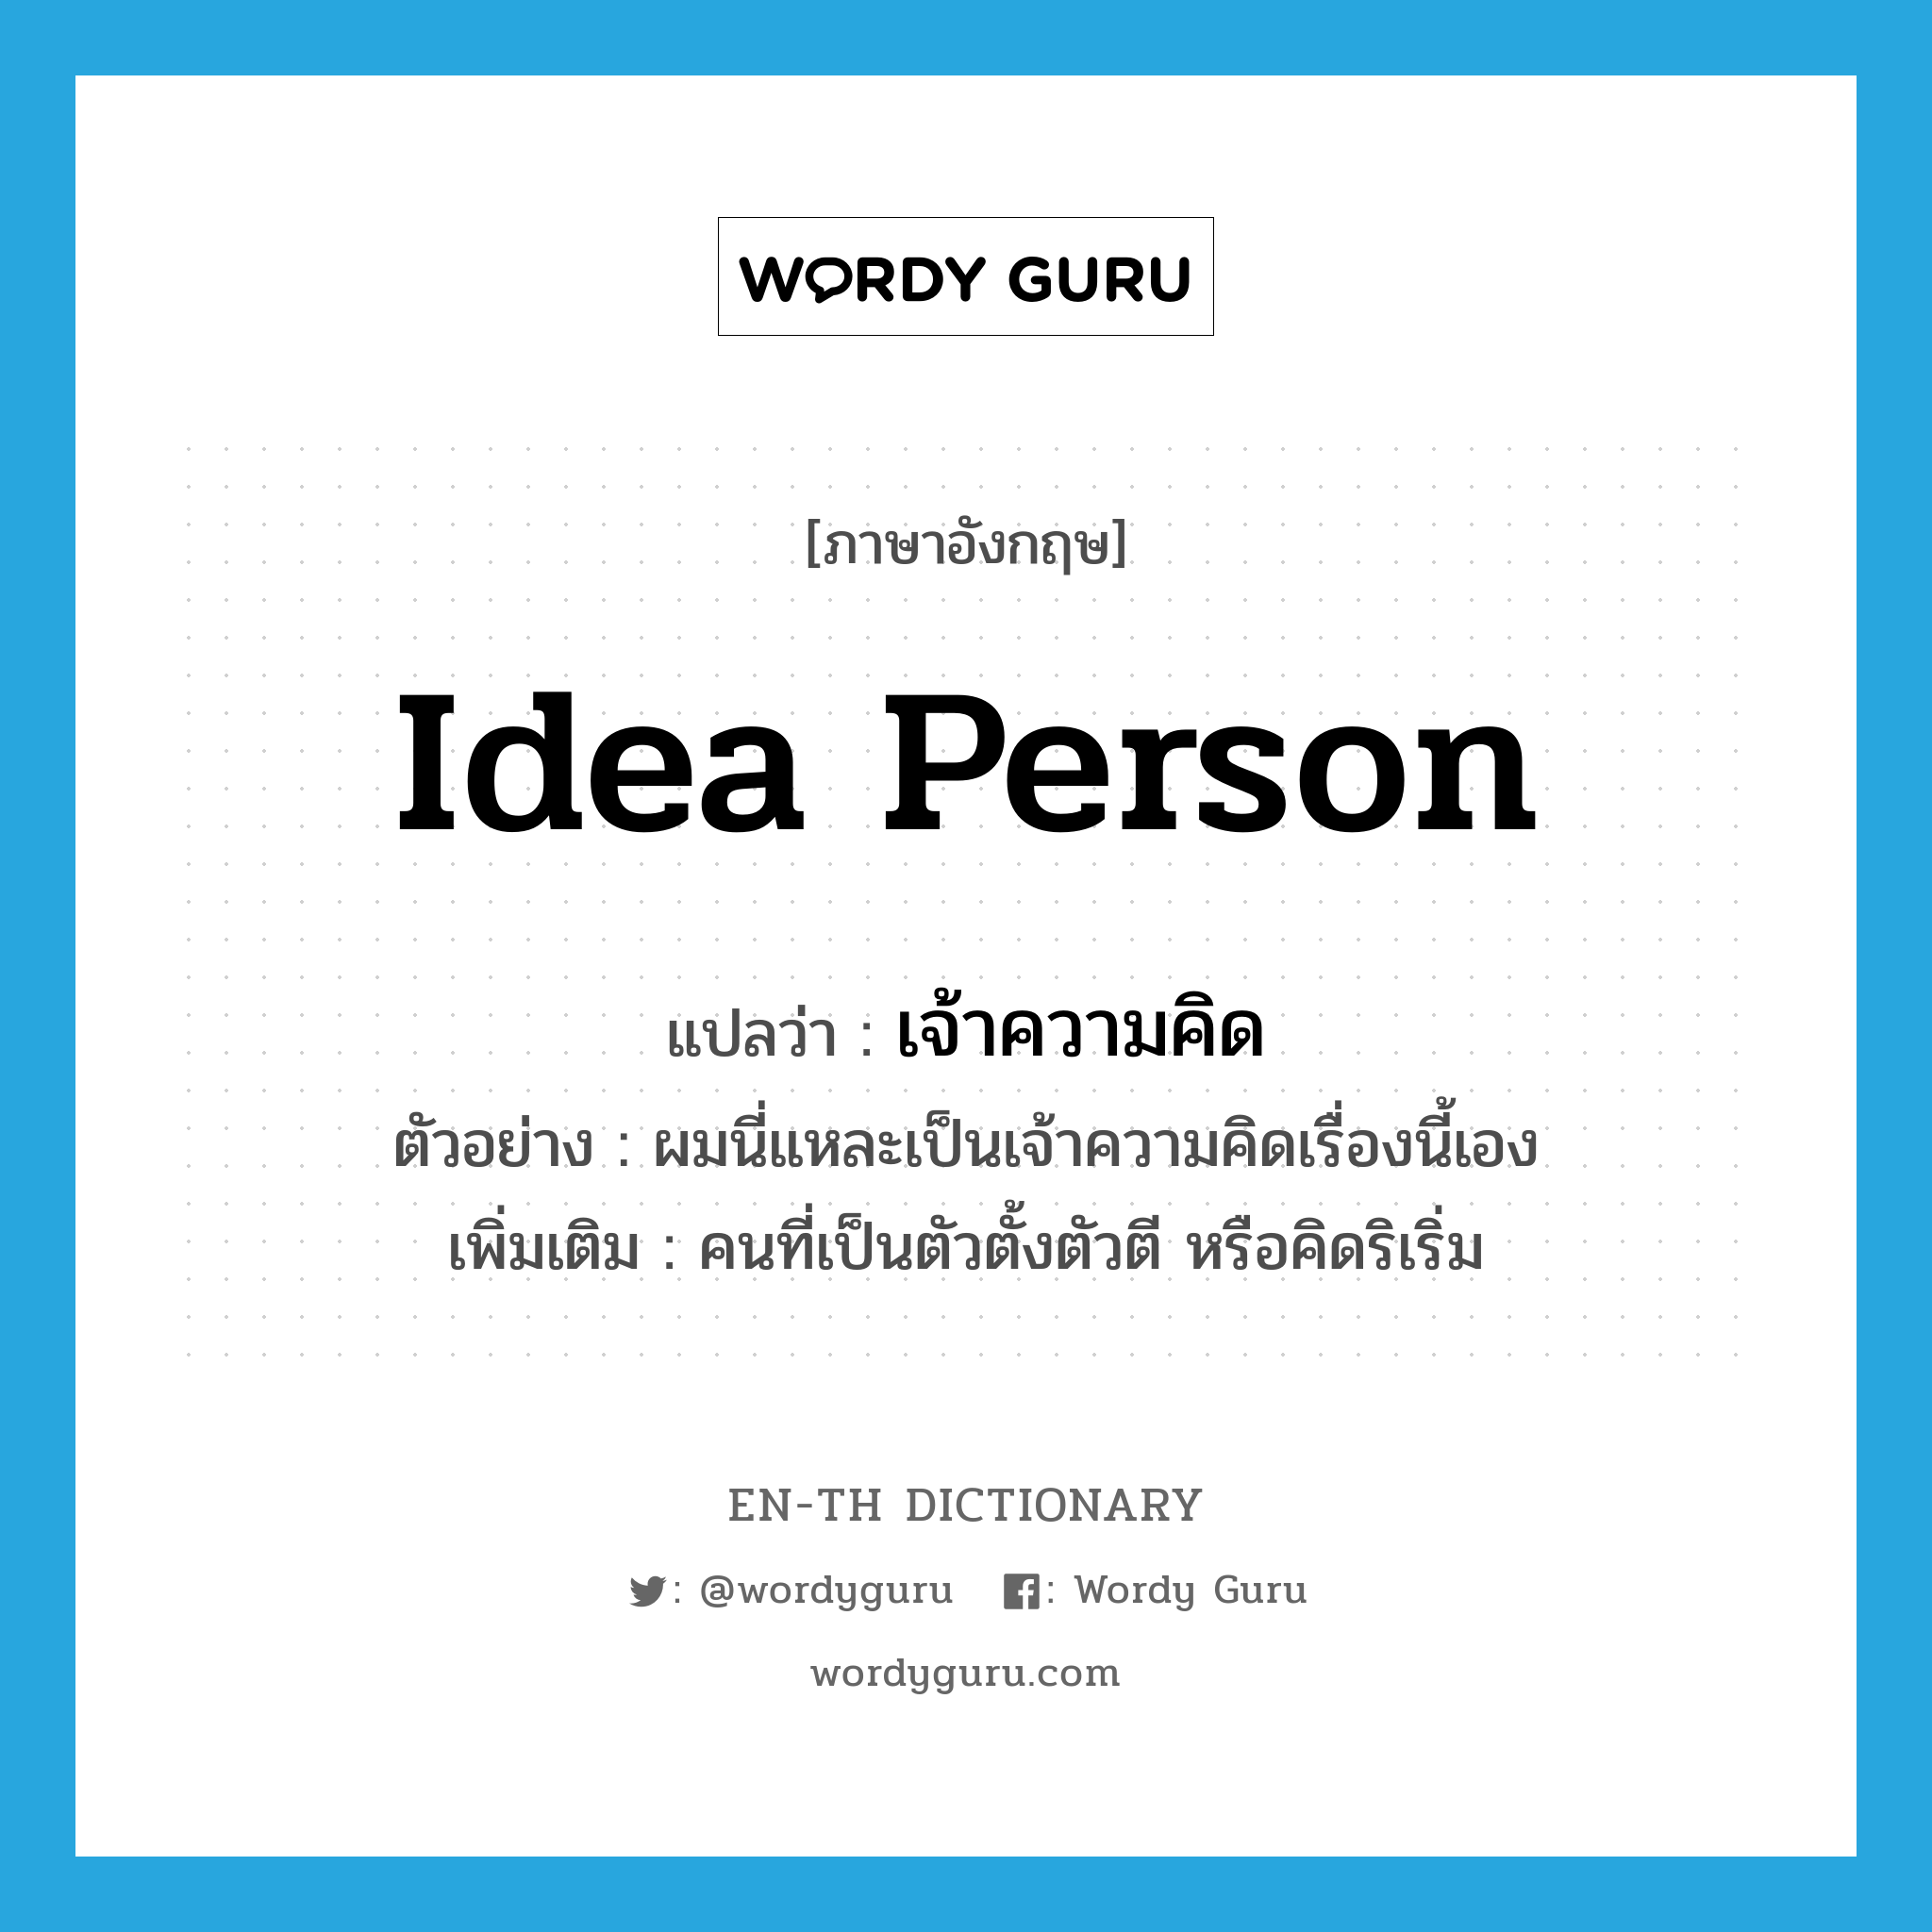 idea person แปลว่า?, คำศัพท์ภาษาอังกฤษ idea person แปลว่า เจ้าความคิด ประเภท N ตัวอย่าง ผมนี่แหละเป็นเจ้าความคิดเรื่องนี้เอง เพิ่มเติม คนที่เป็นตัวตั้งตัวตี หรือคิดริเริ่ม หมวด N